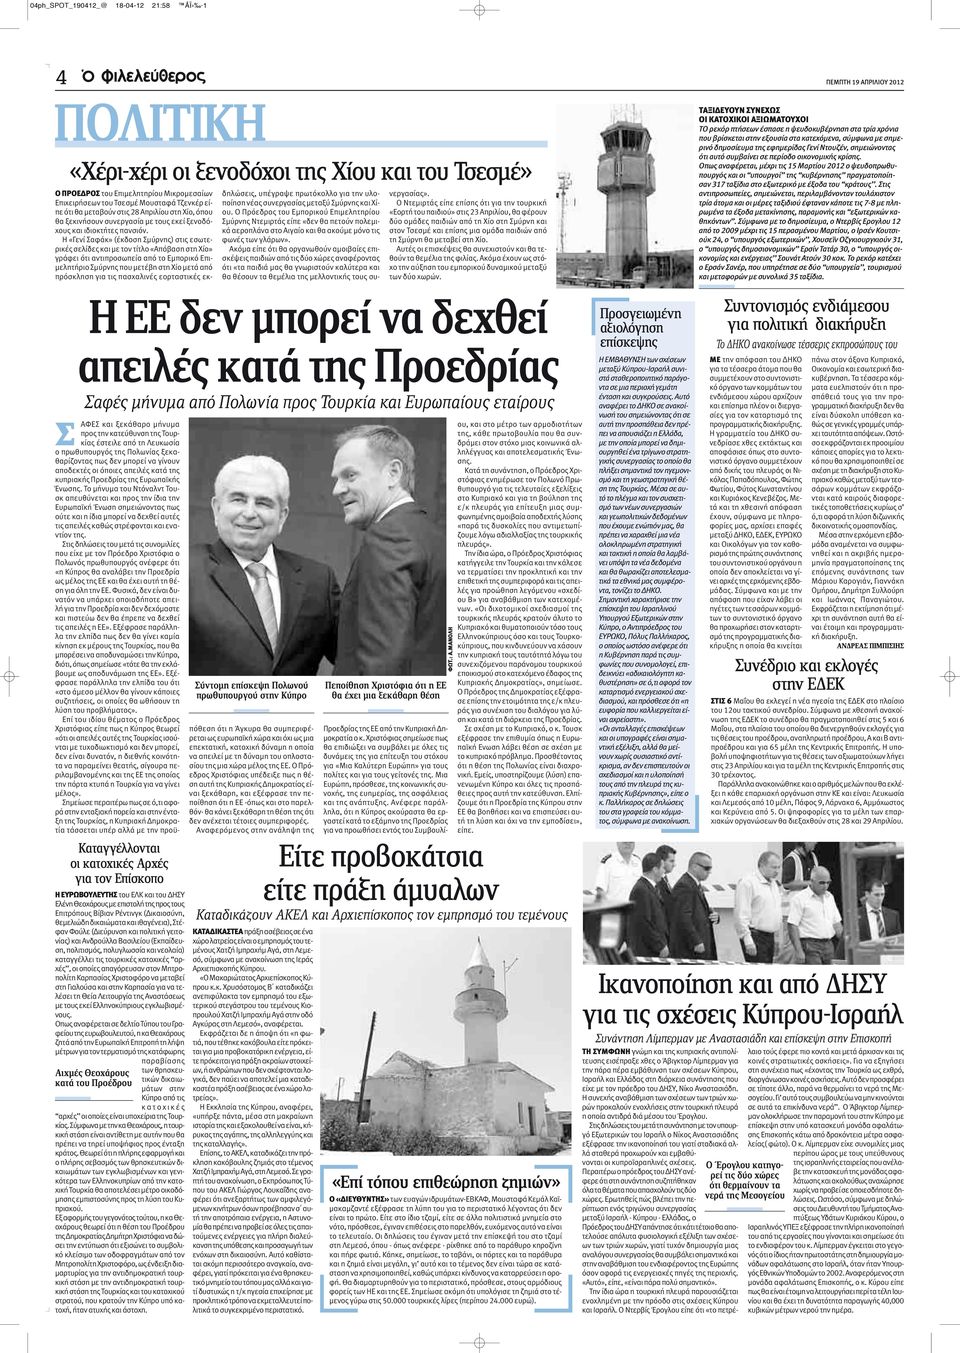 Η «Γενί Σαφάκ» (έκδοση Σμύρνης) στις εσωτερικές σελίδες και με τον τίτλο «Απόβαση στη Χίο» γράφει ότι αντιπροσωπεία από το Εμπορικό Επιμελητήριο Σμύρνης που μετέβη στη Χίο μετά από πρόσκληση για τις